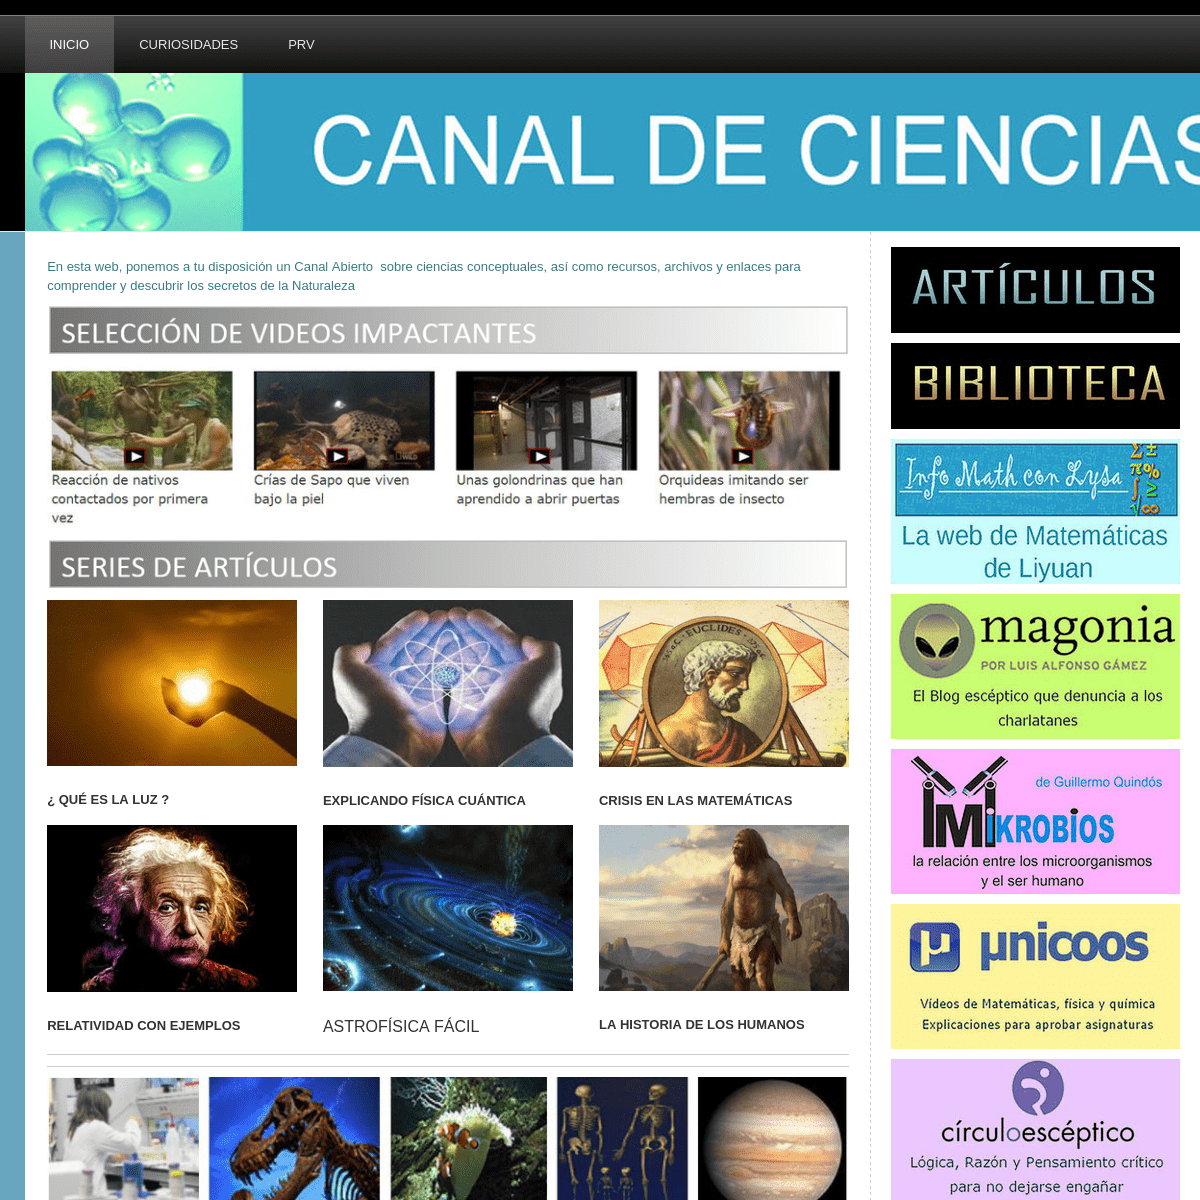 A complete backup of canaldeciencias.com